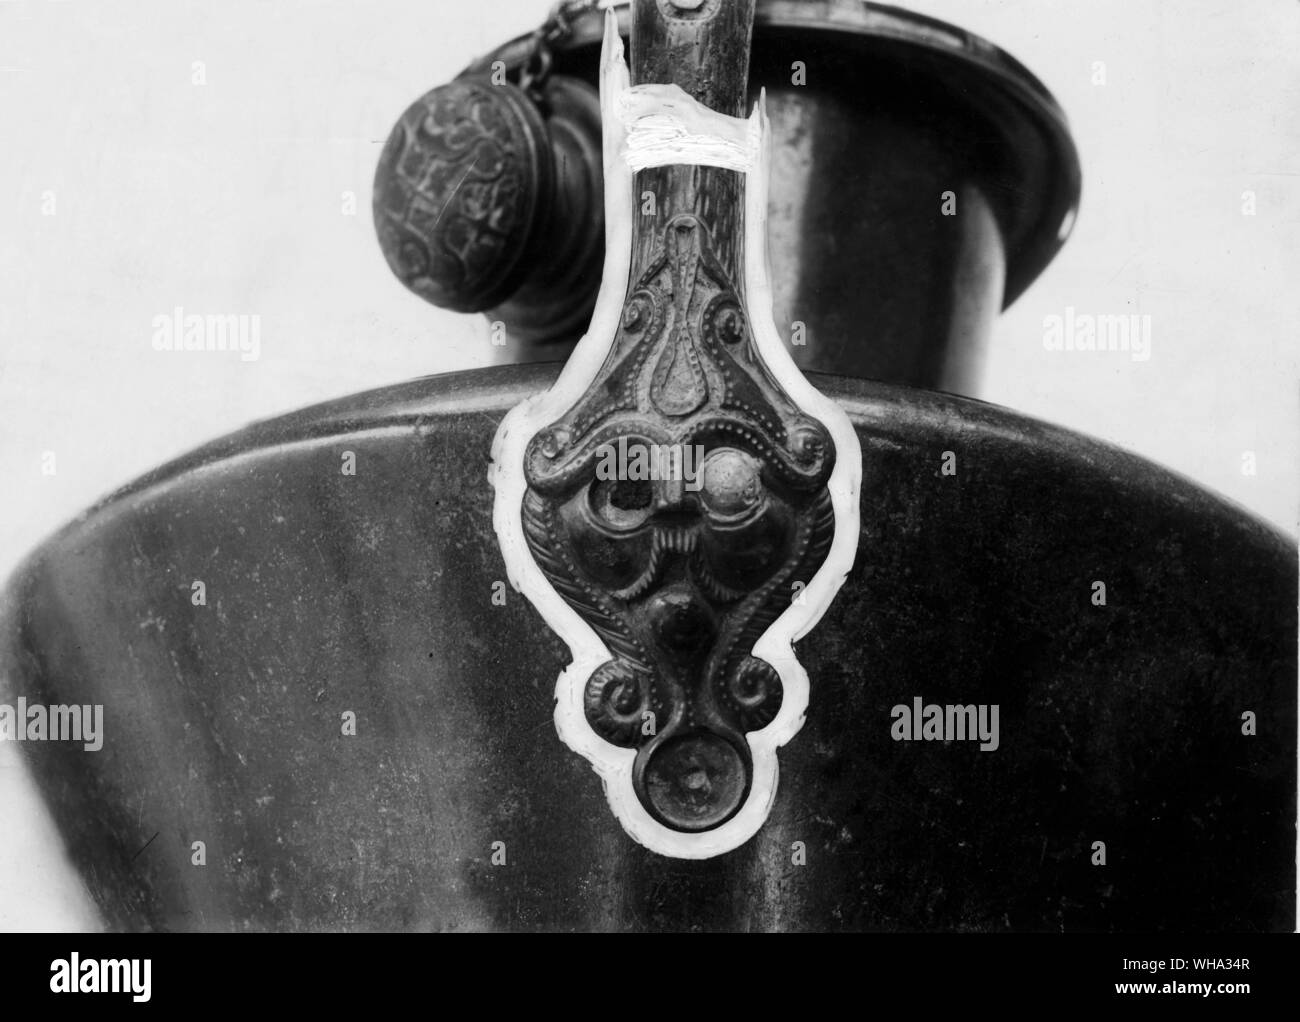 Frühe Eisenzeit Artefakt. Deatil von der Eisenzeit Griff auf einem Topf/Vase. Menschliche Maske an der Unterseite des Griffs. Stockfoto